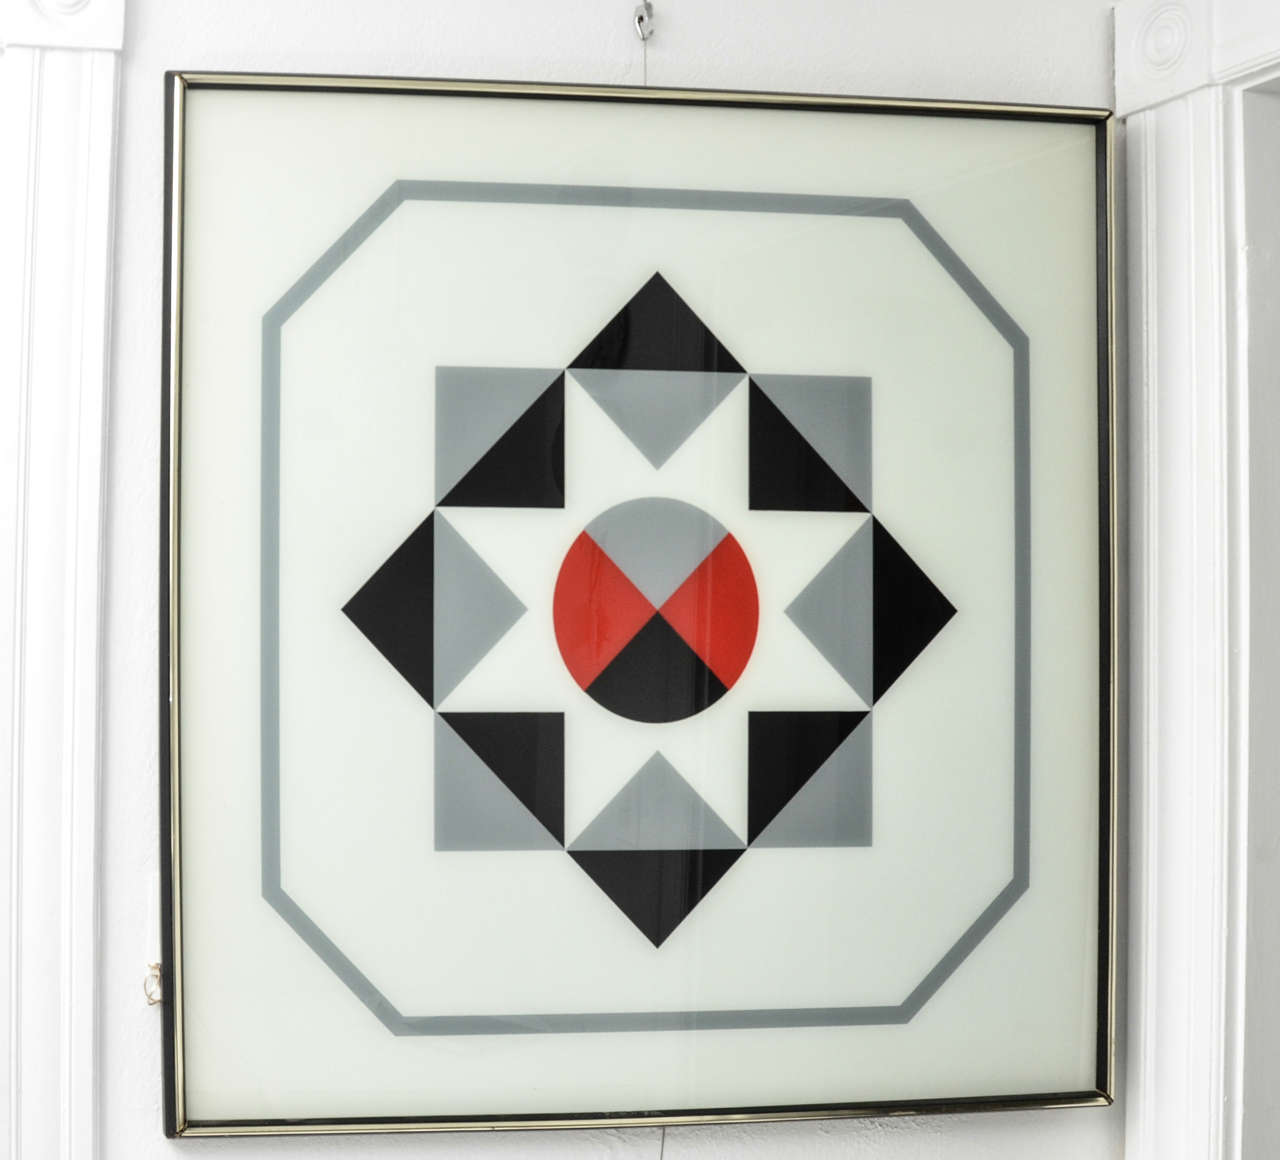 Tableau à motifs géométriques des années 1960, encadré et peint à l'envers sur verre.